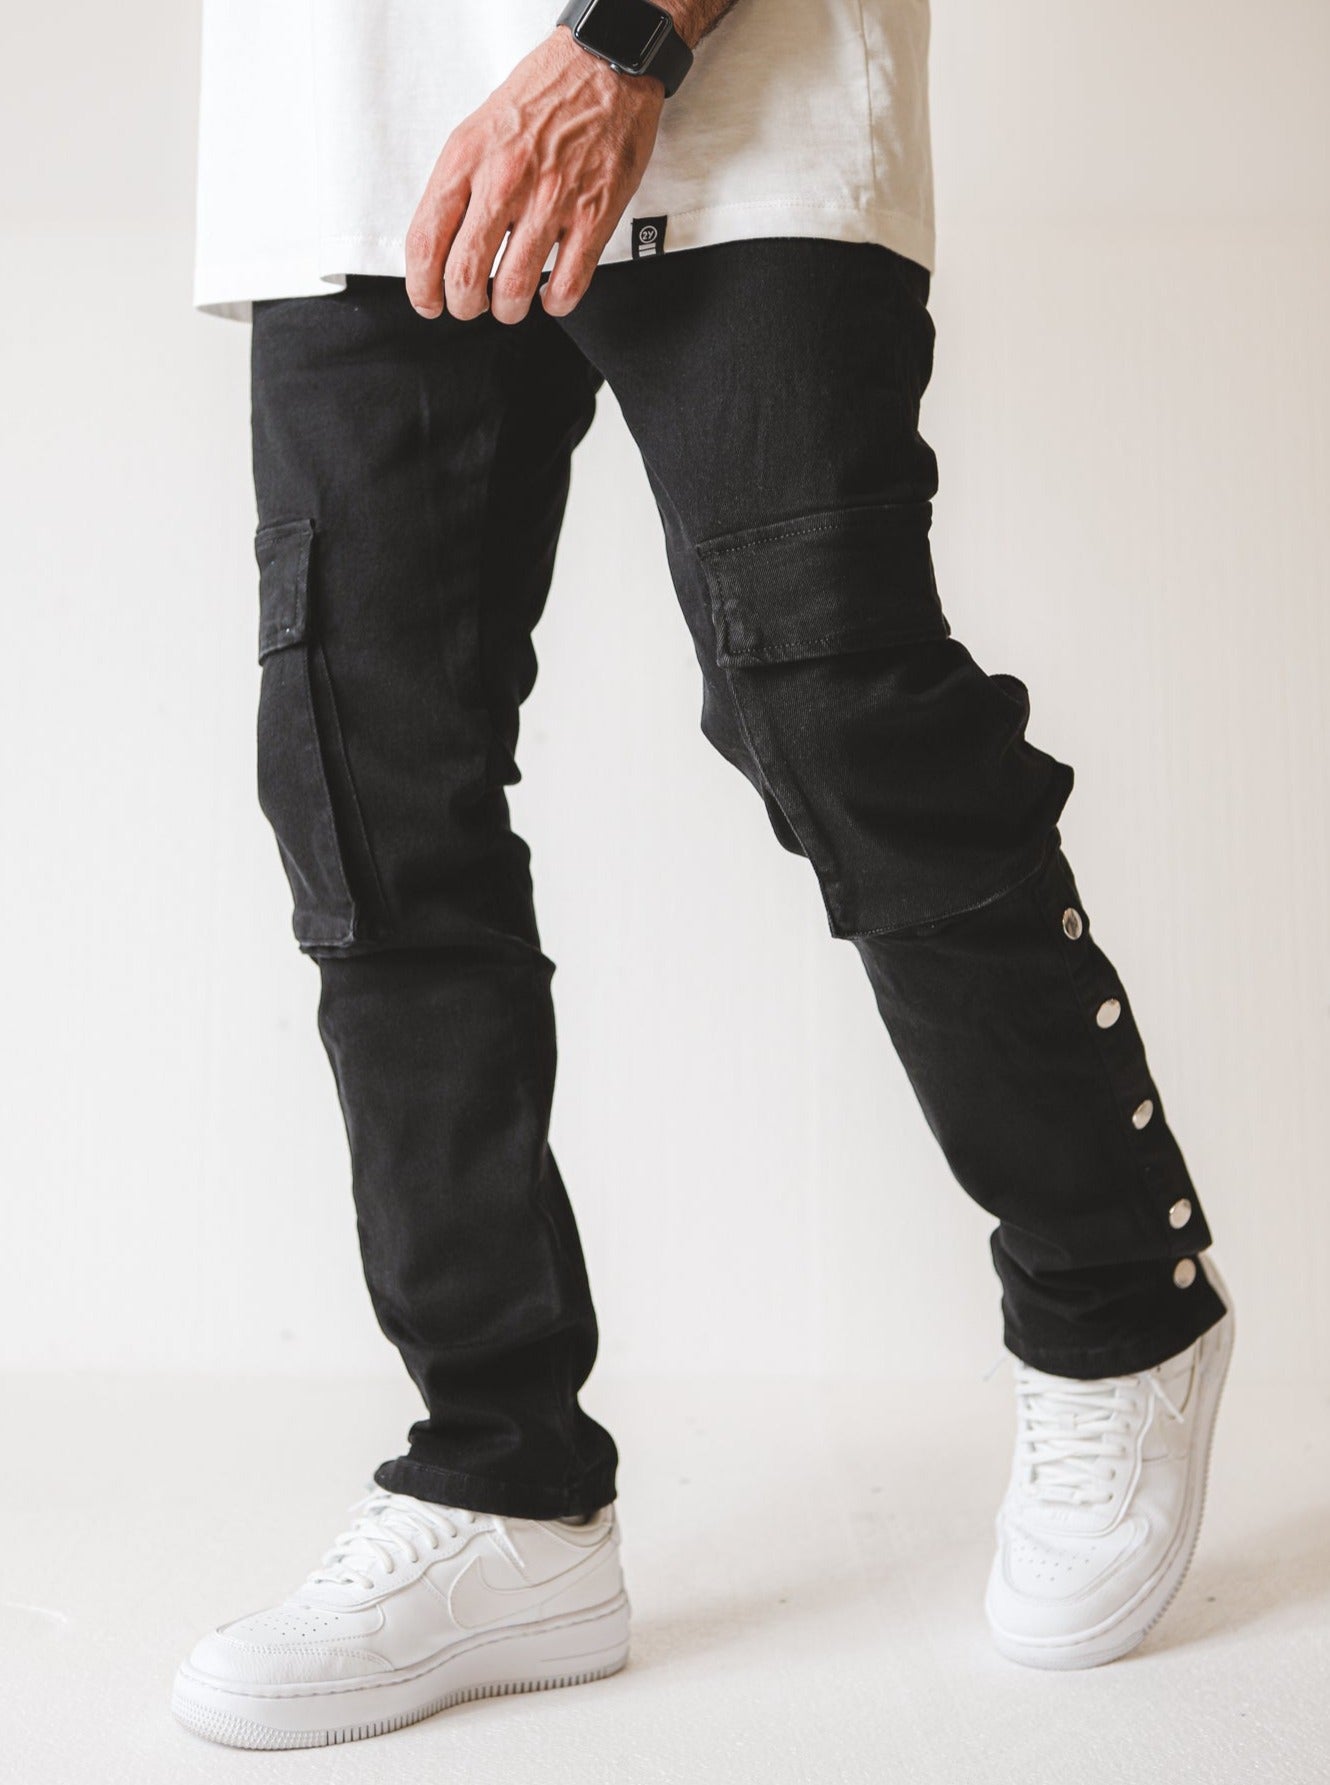 V7 Premium Denim Jeans Cargo - Black - UNEFFECTED STUDIOS® - CARGO PANTS - UNEFFECTED STUDIOS®